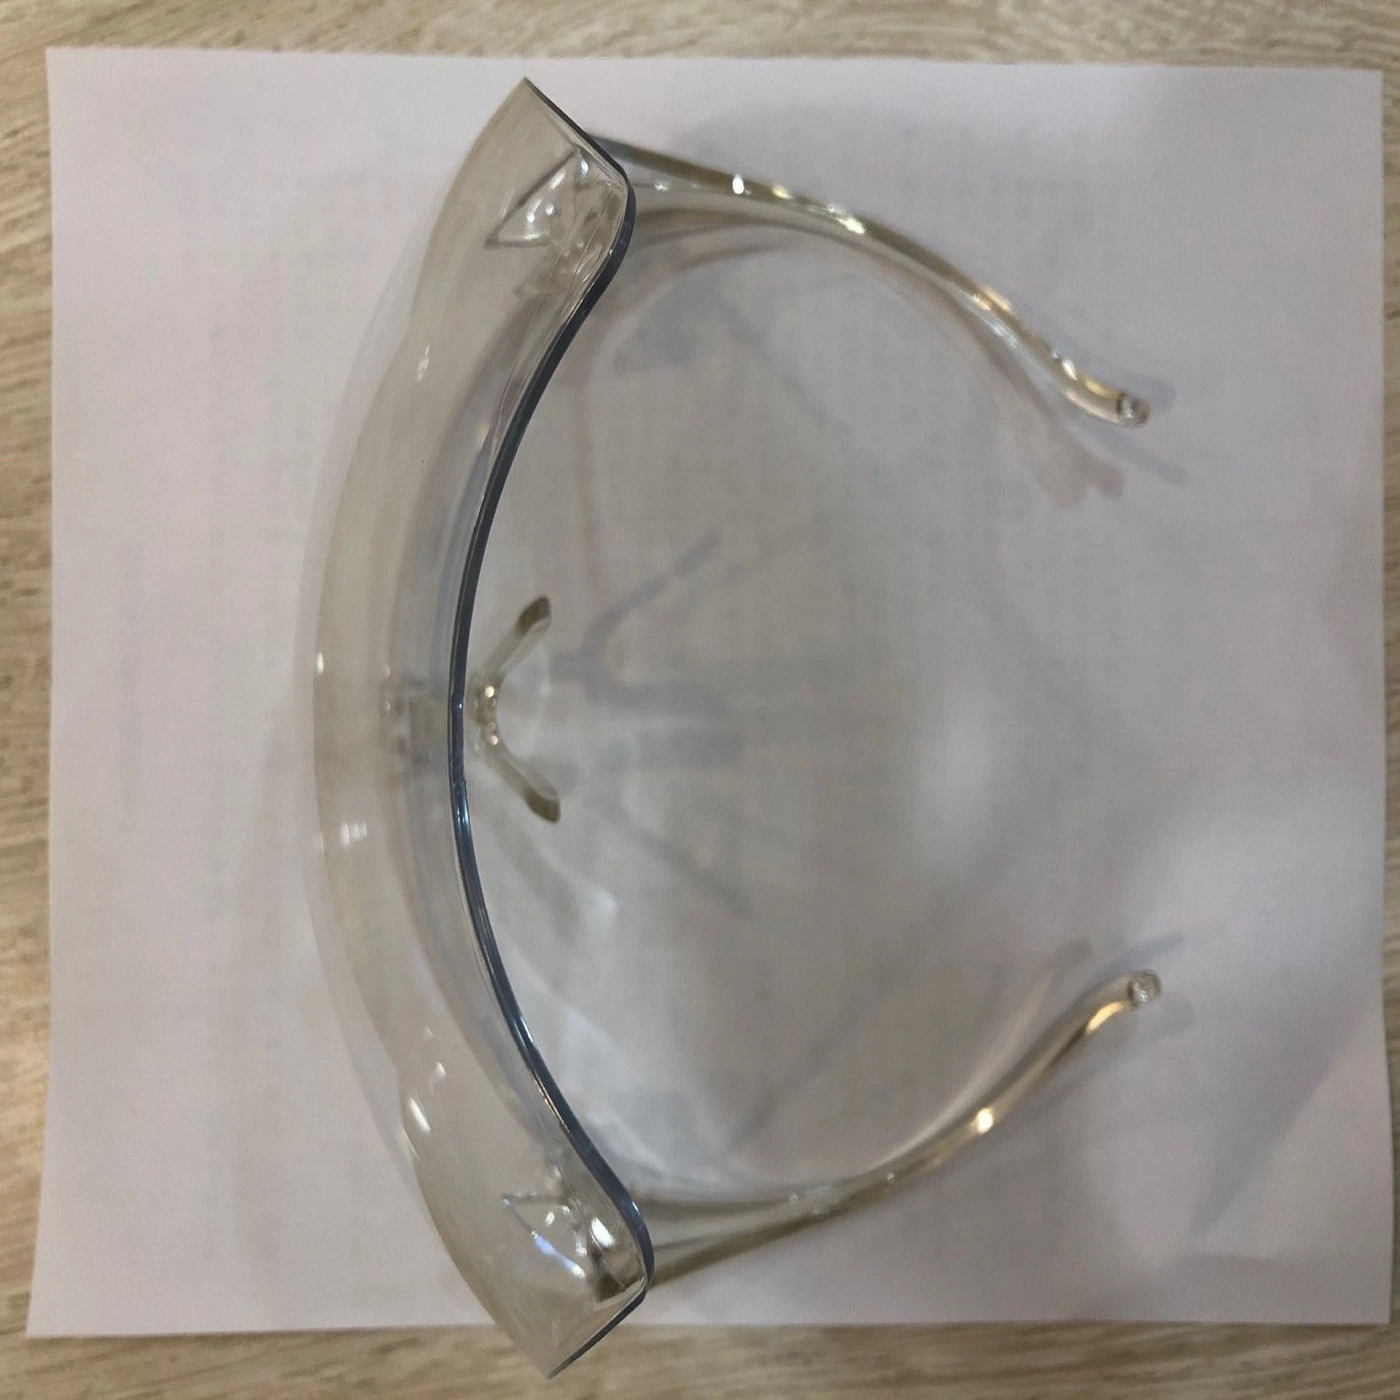 Las existencias de la fábrica de seguridad de alta calidad protector facial Visor tipo gafas Protector de cara